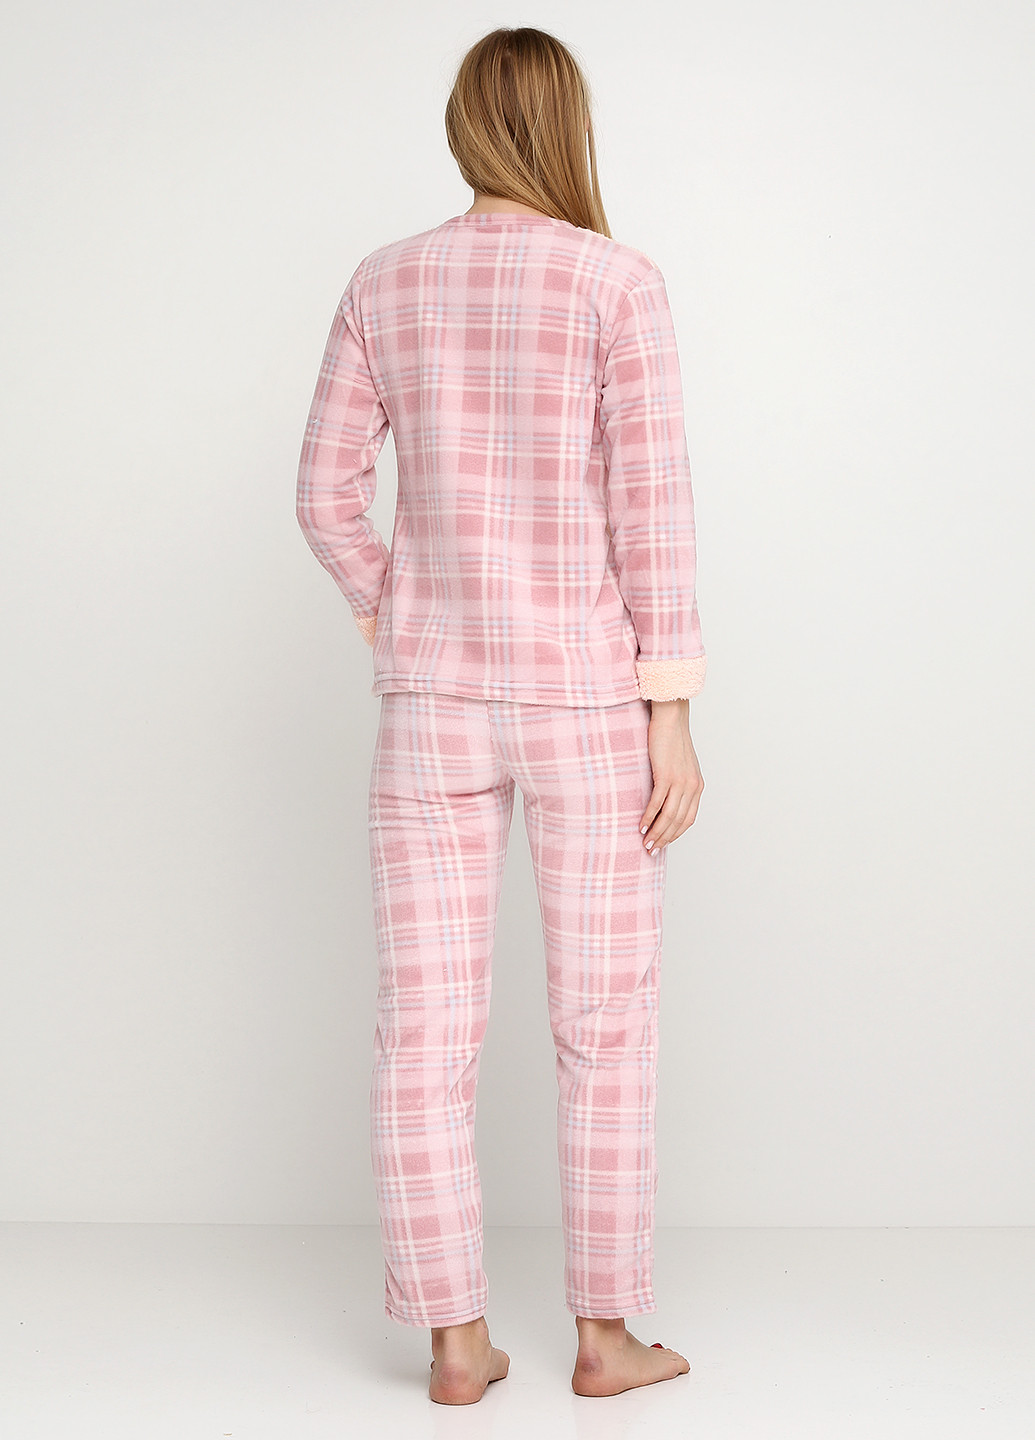 Персиковая всесезон пижама (свитшот, брюки, маска для сна) SNC